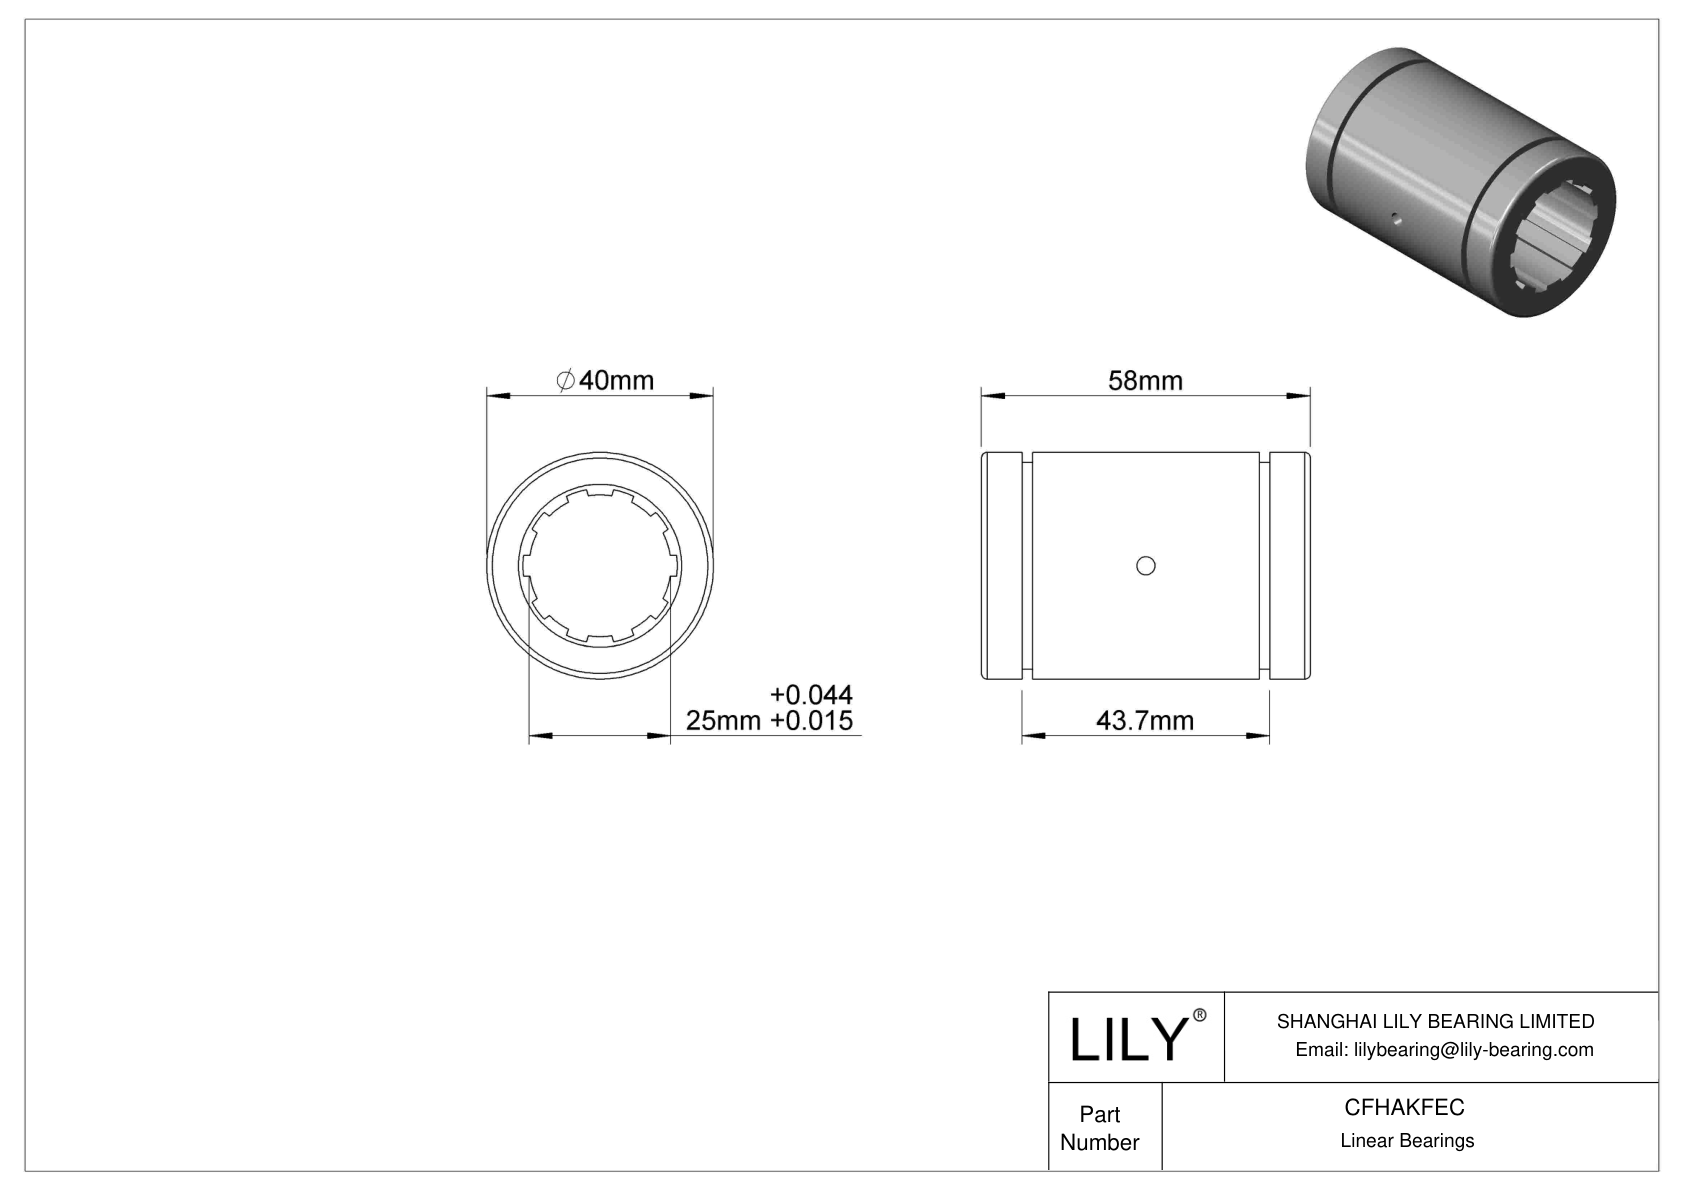 CFHAKFEC Dust-Resistant Linear Sleeve Bearings cad drawing